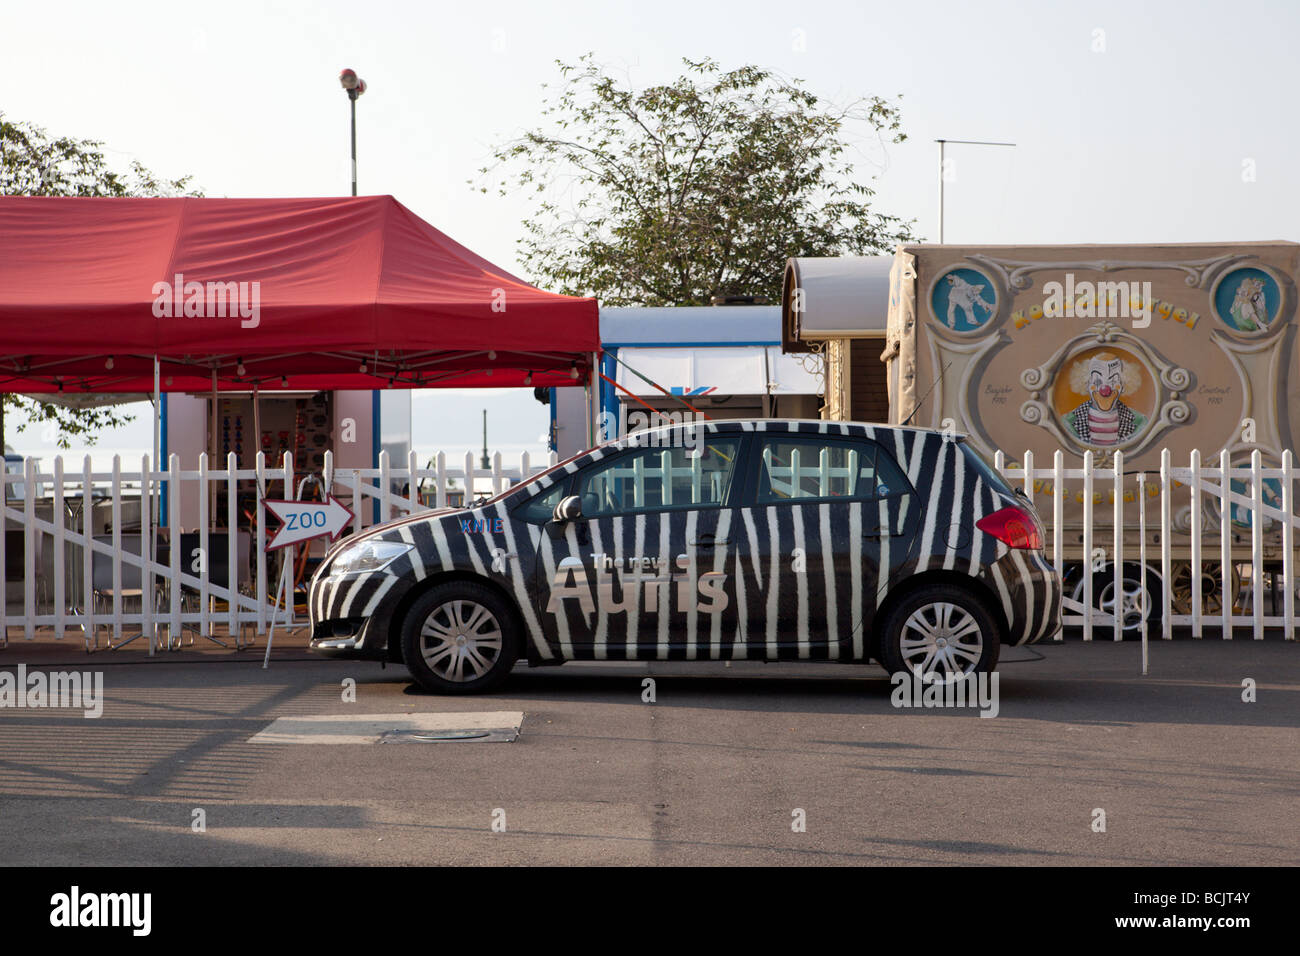 Voiture de cirque peint avec zebra stripes contre une clôture. Charles Lupica Banque D'Images